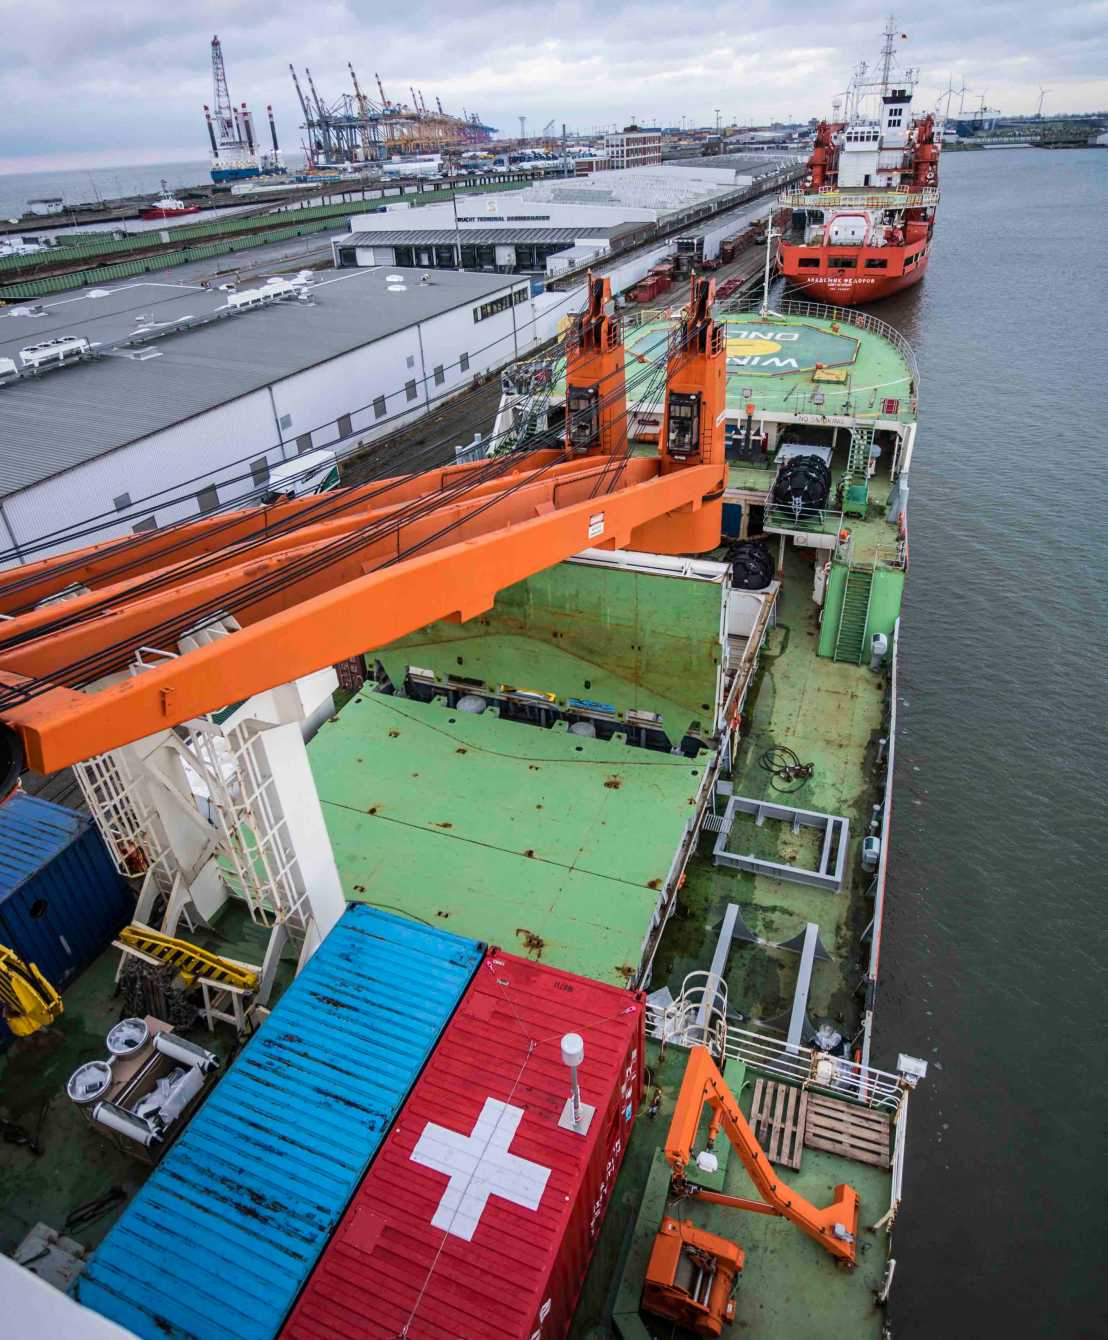 Blick vom obersten Deck: Der Schweizer Messcontainer ist gut zu erkennen.